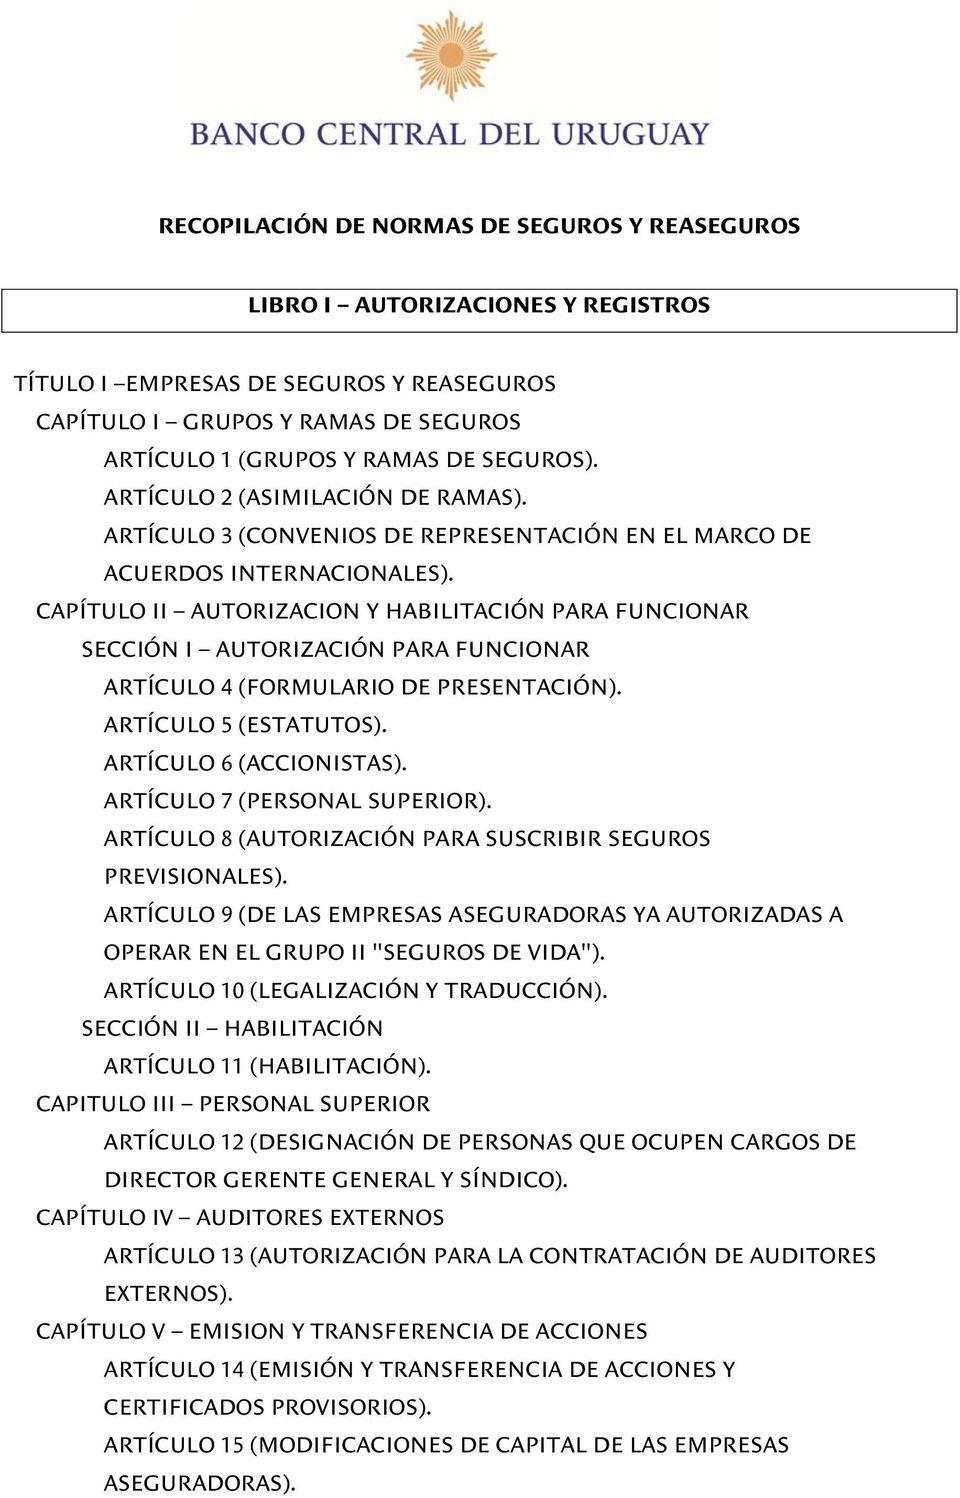 CAPÍTULO II AUTORIZACION Y HABILITACIÓN PARA FUNCIONAR SECCIÓN I AUTORIZACIÓN PARA FUNCIONAR ARTÍCULO 4 (FORMULARIO DE PRESENTACIÓN). ARTÍCULO 5 (ESTATUTOS). ARTÍCULO 6 (ACCIONISTAS).